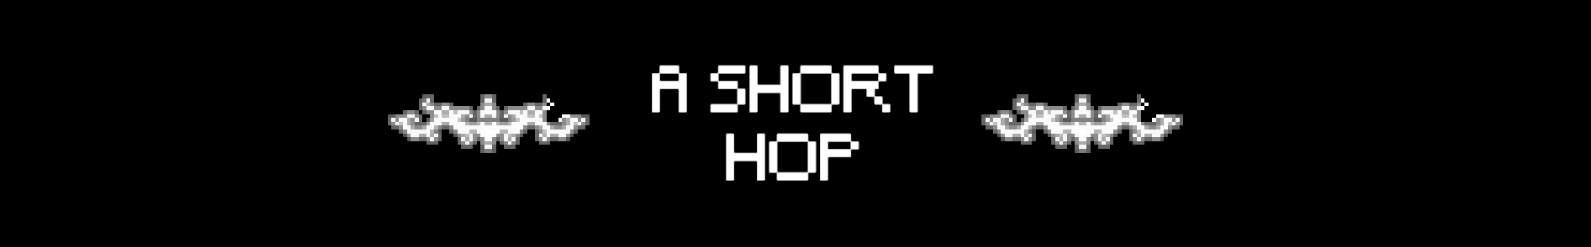 A Short Hop